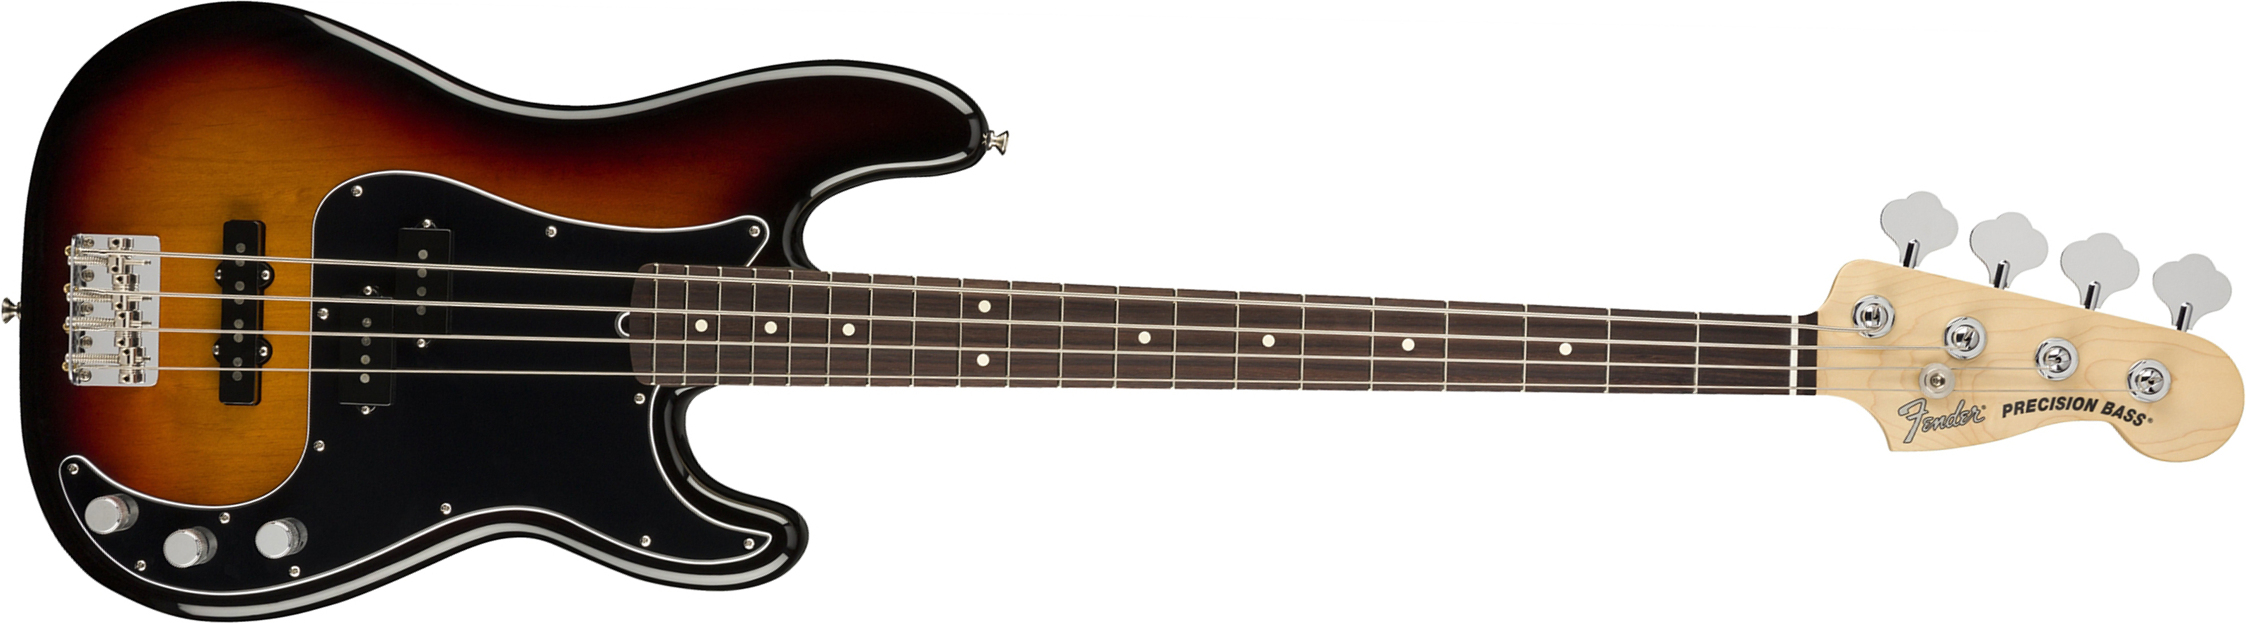 Fender Precision Bass American Performer Usa Rw - 3-color Sunburst - Bajo eléctrico de cuerpo sólido - Main picture